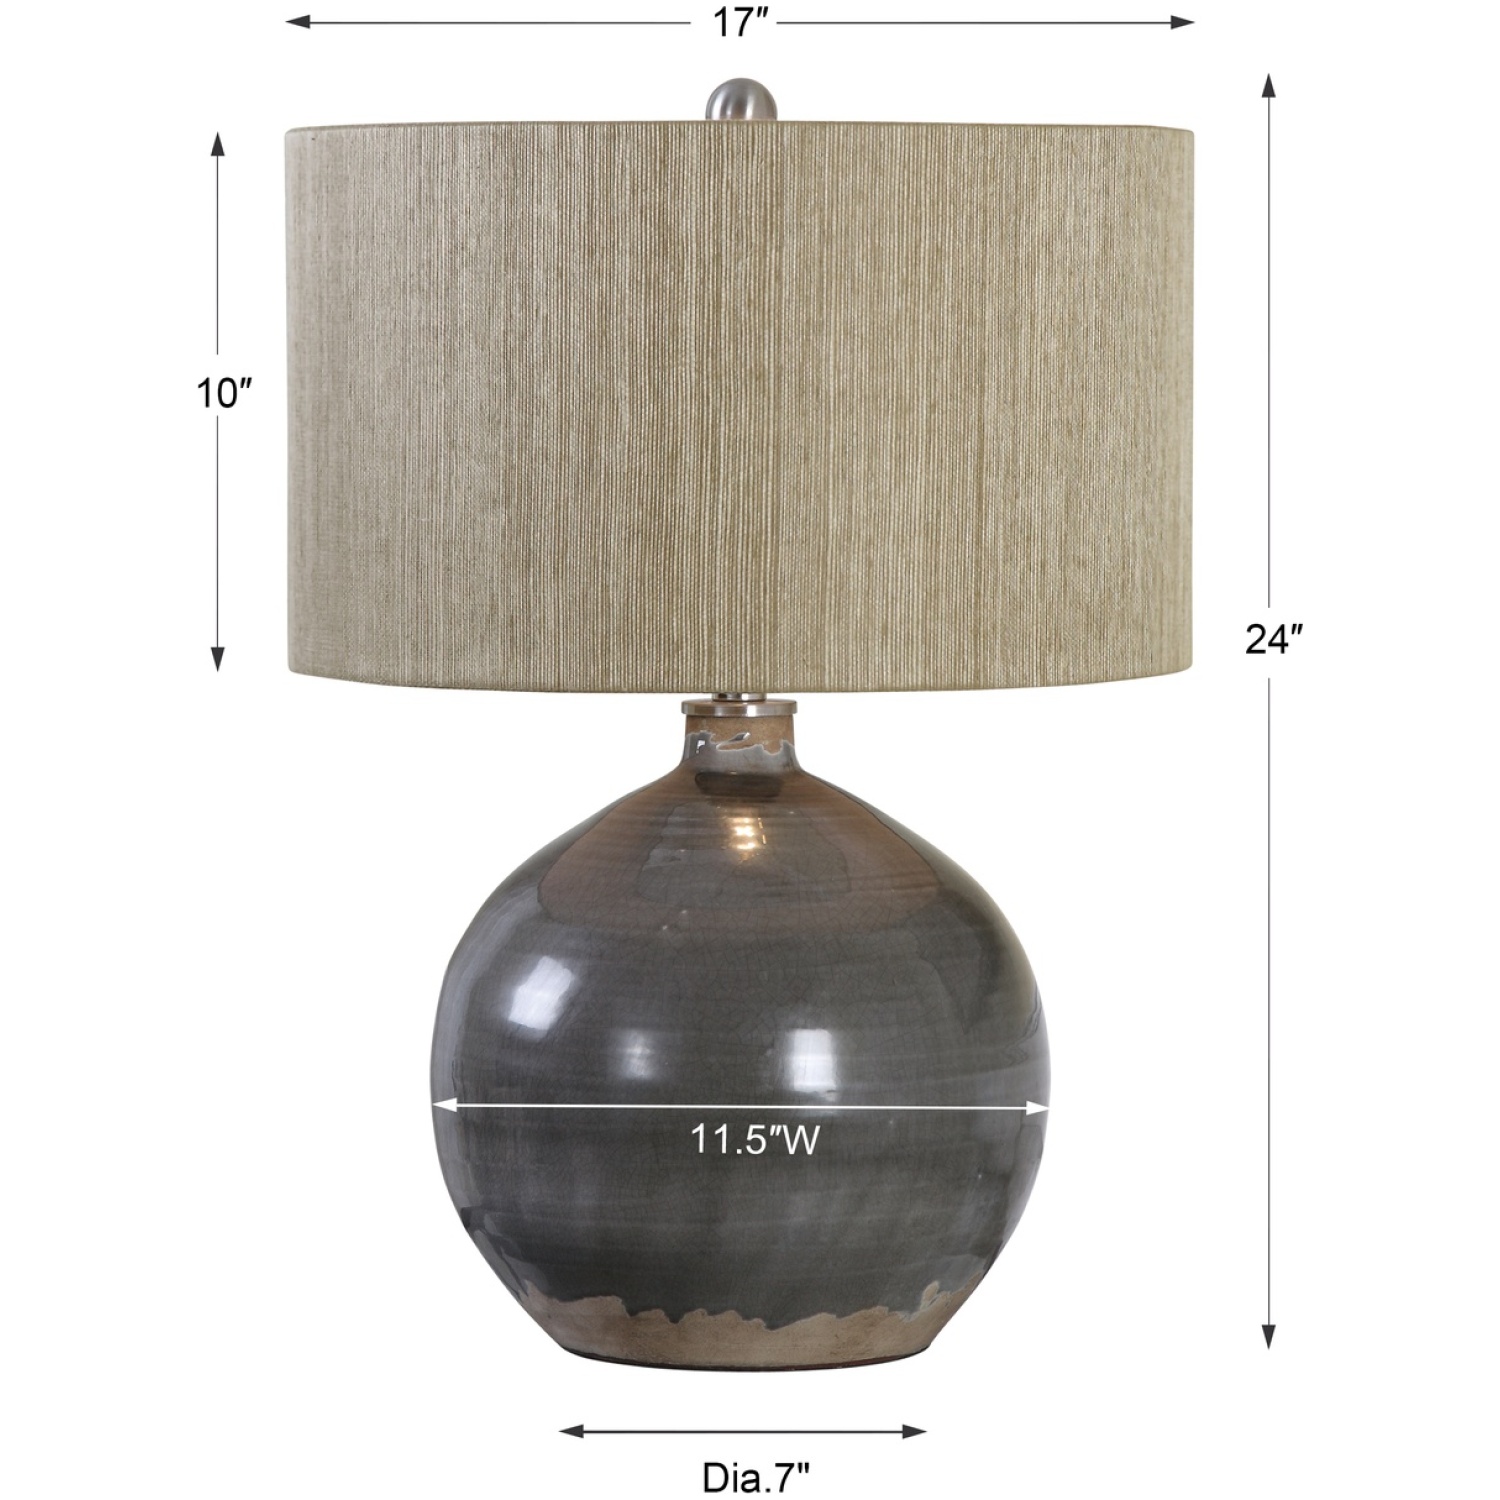 Vardenis Gray Ceramic Lamp